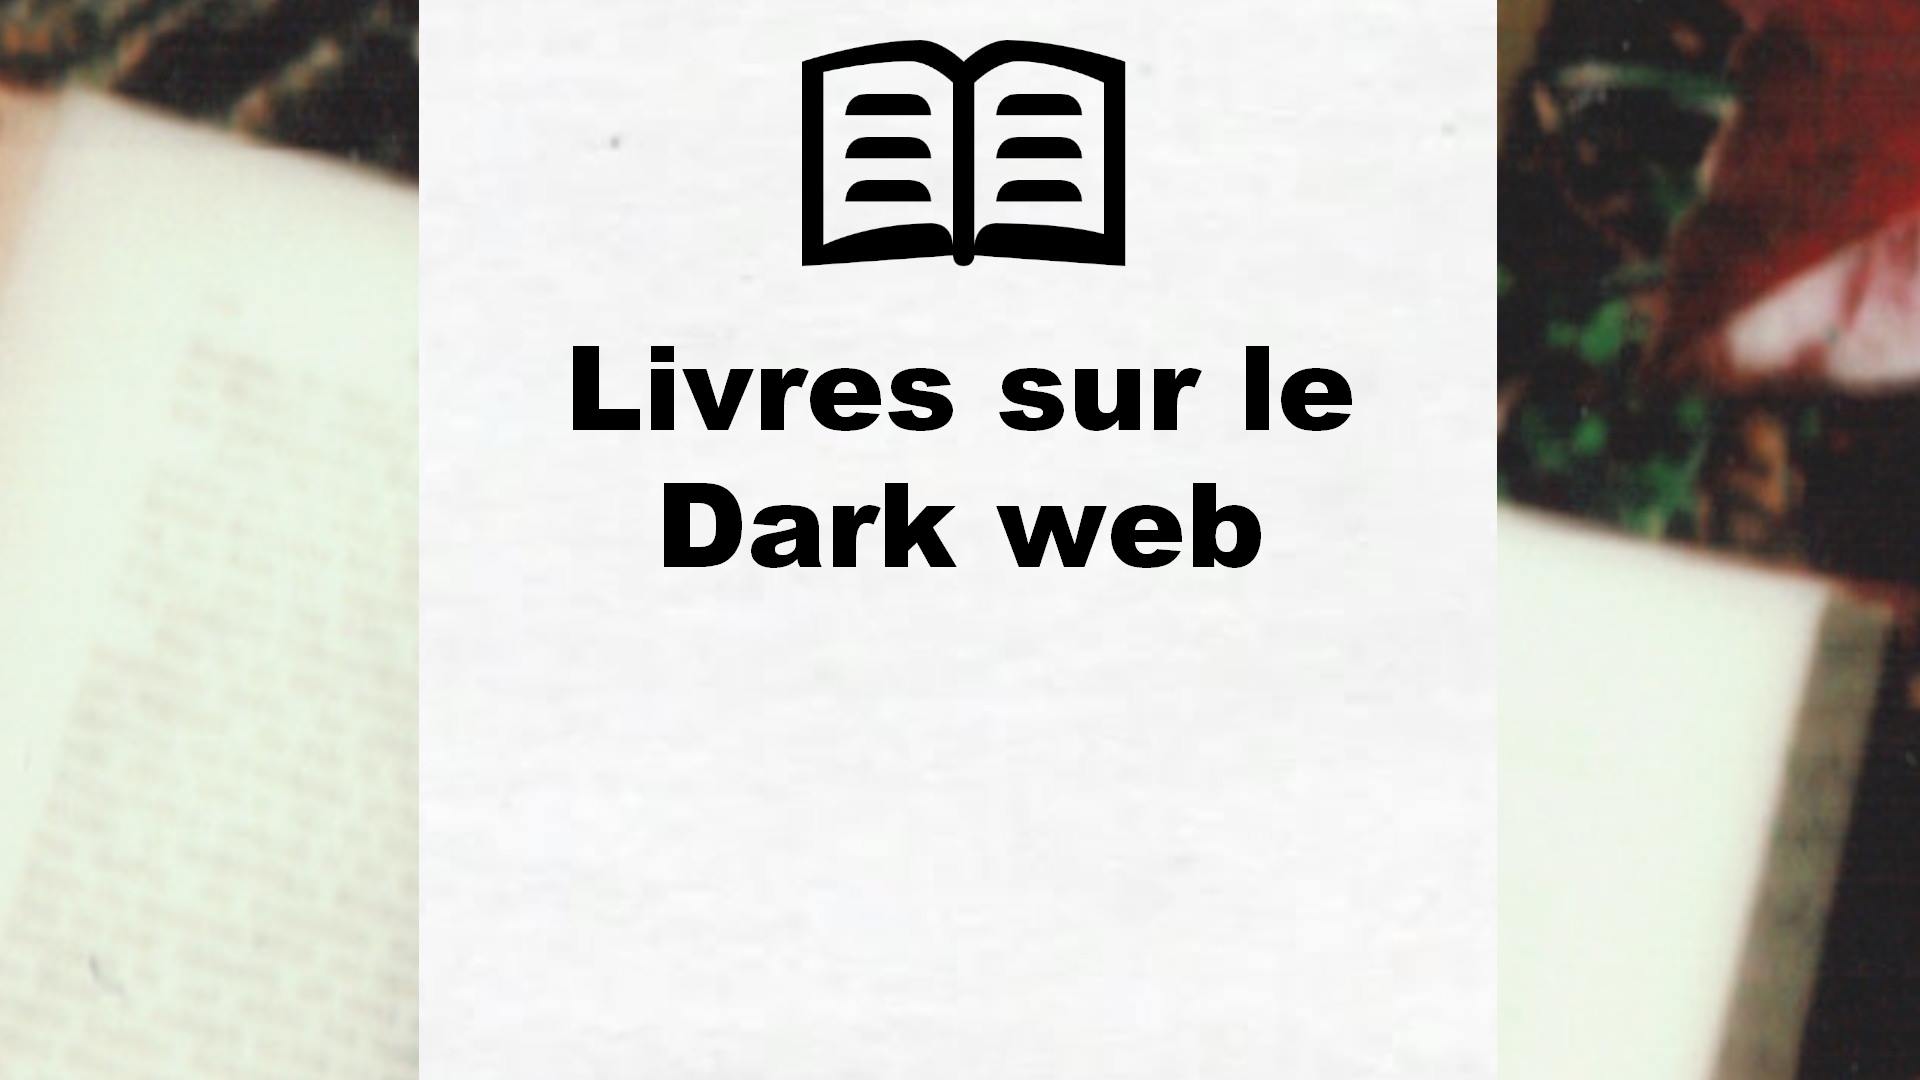 Livres sur le Dark web